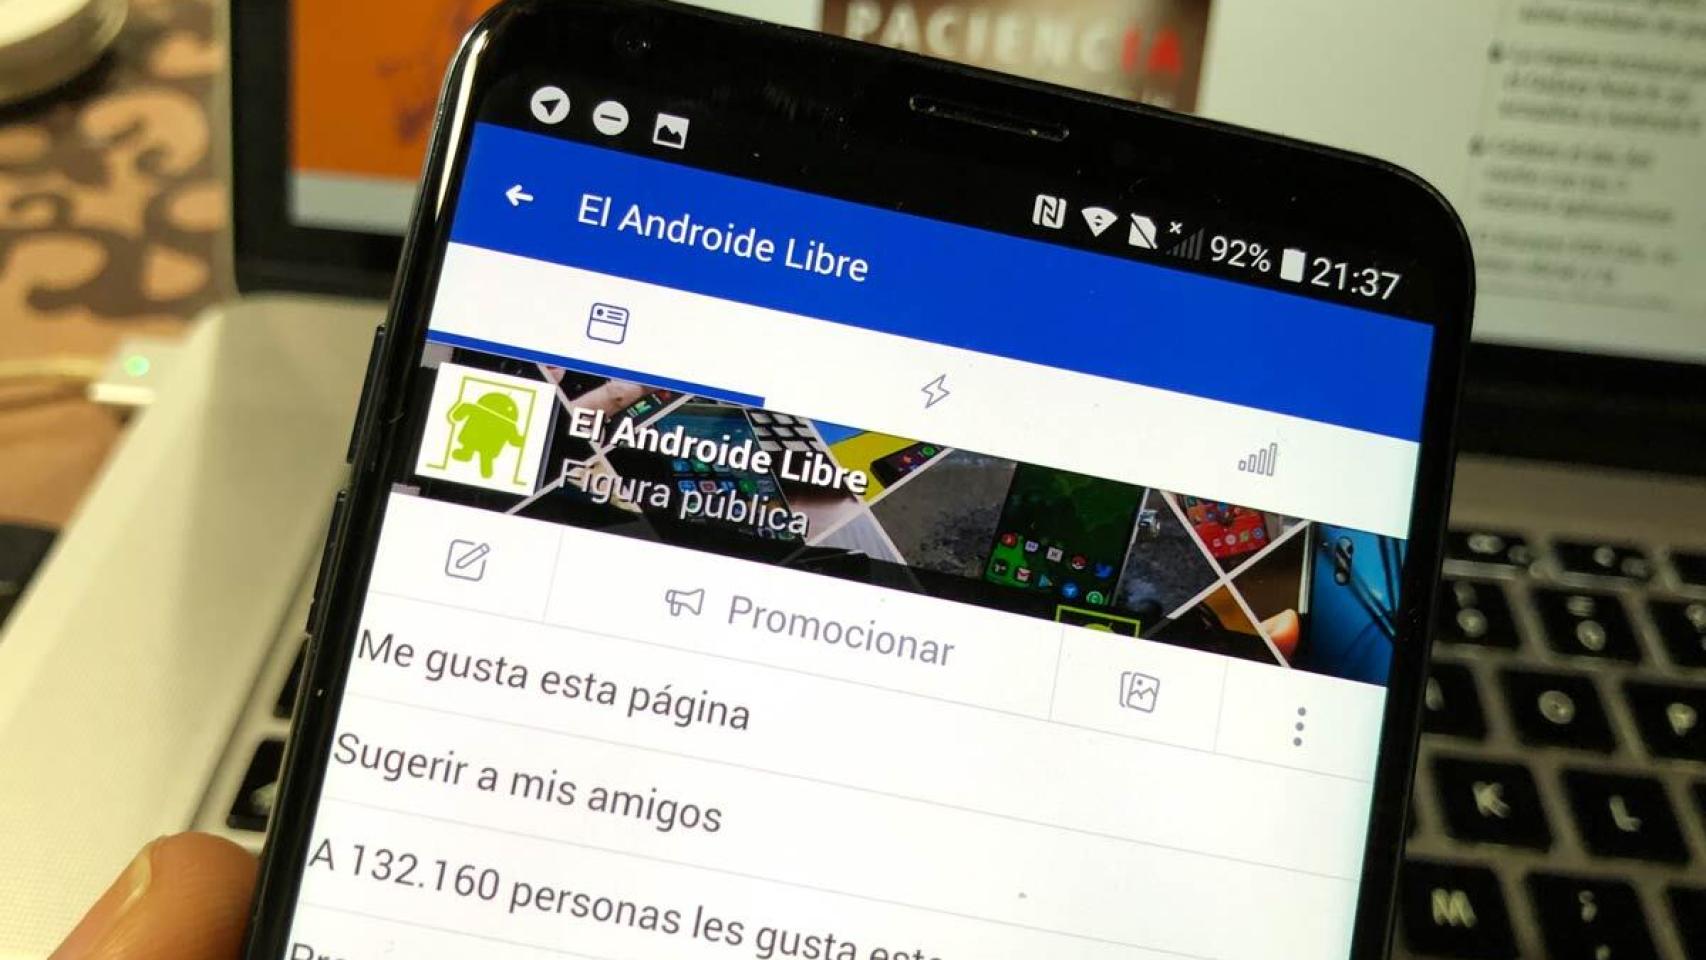 Facebook investigada en España por el filtrado de datos de sus usuarios